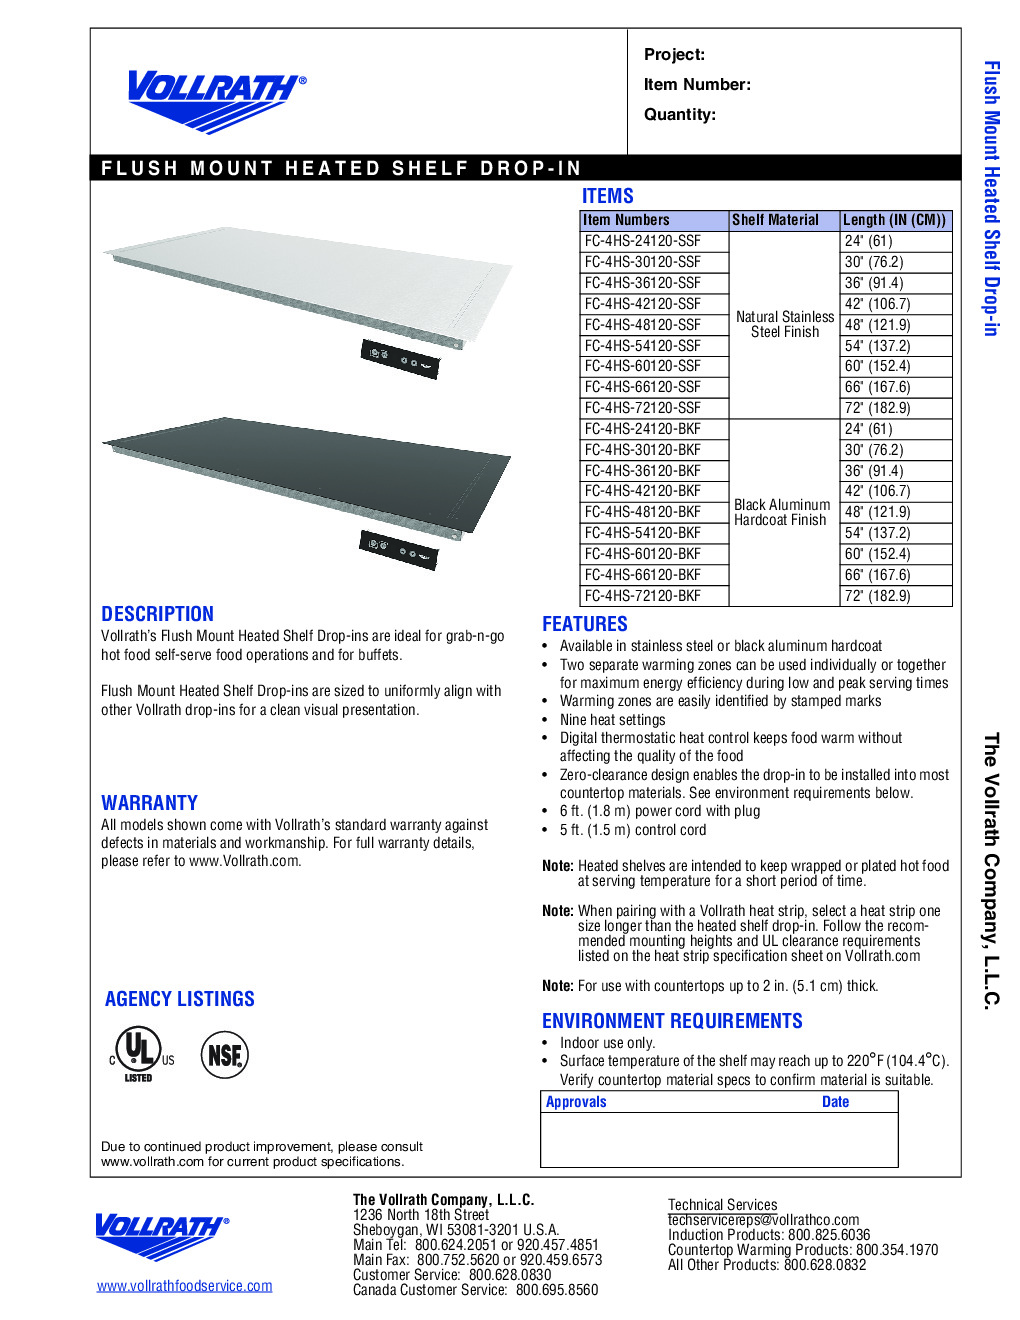 Vollrath FC-4HS-48120-BKF Heated Shelf Food Warmer